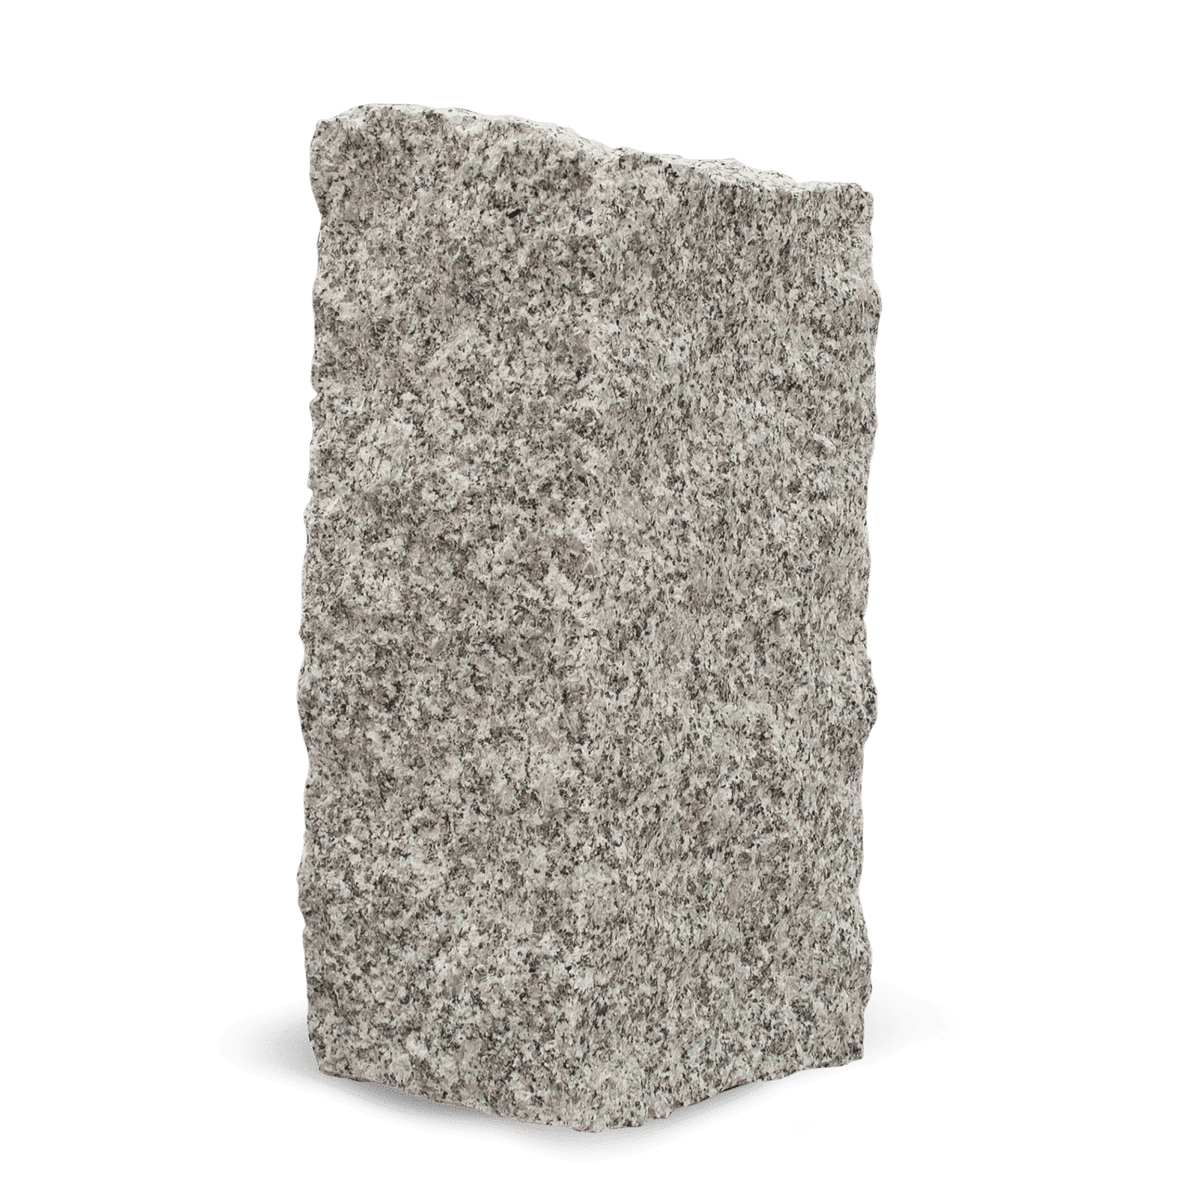 Galamio Granit Mauersteine 40*20*20 » gebrochen « 1000kg